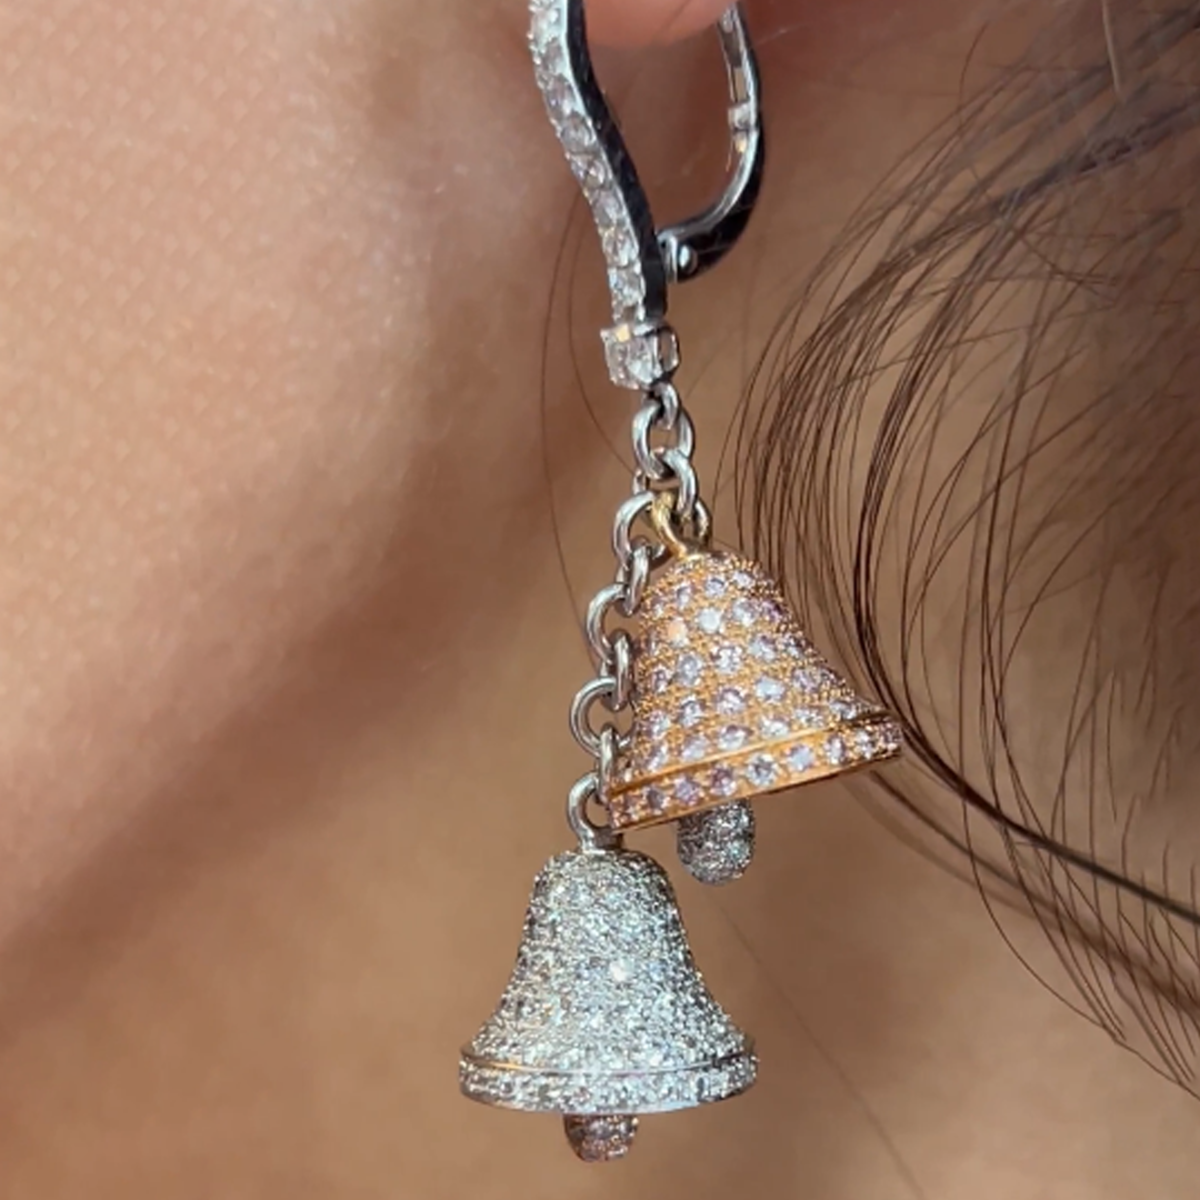 Post-1980s 18KT White Gold Pink & White Diamond Bell Earrings on ear